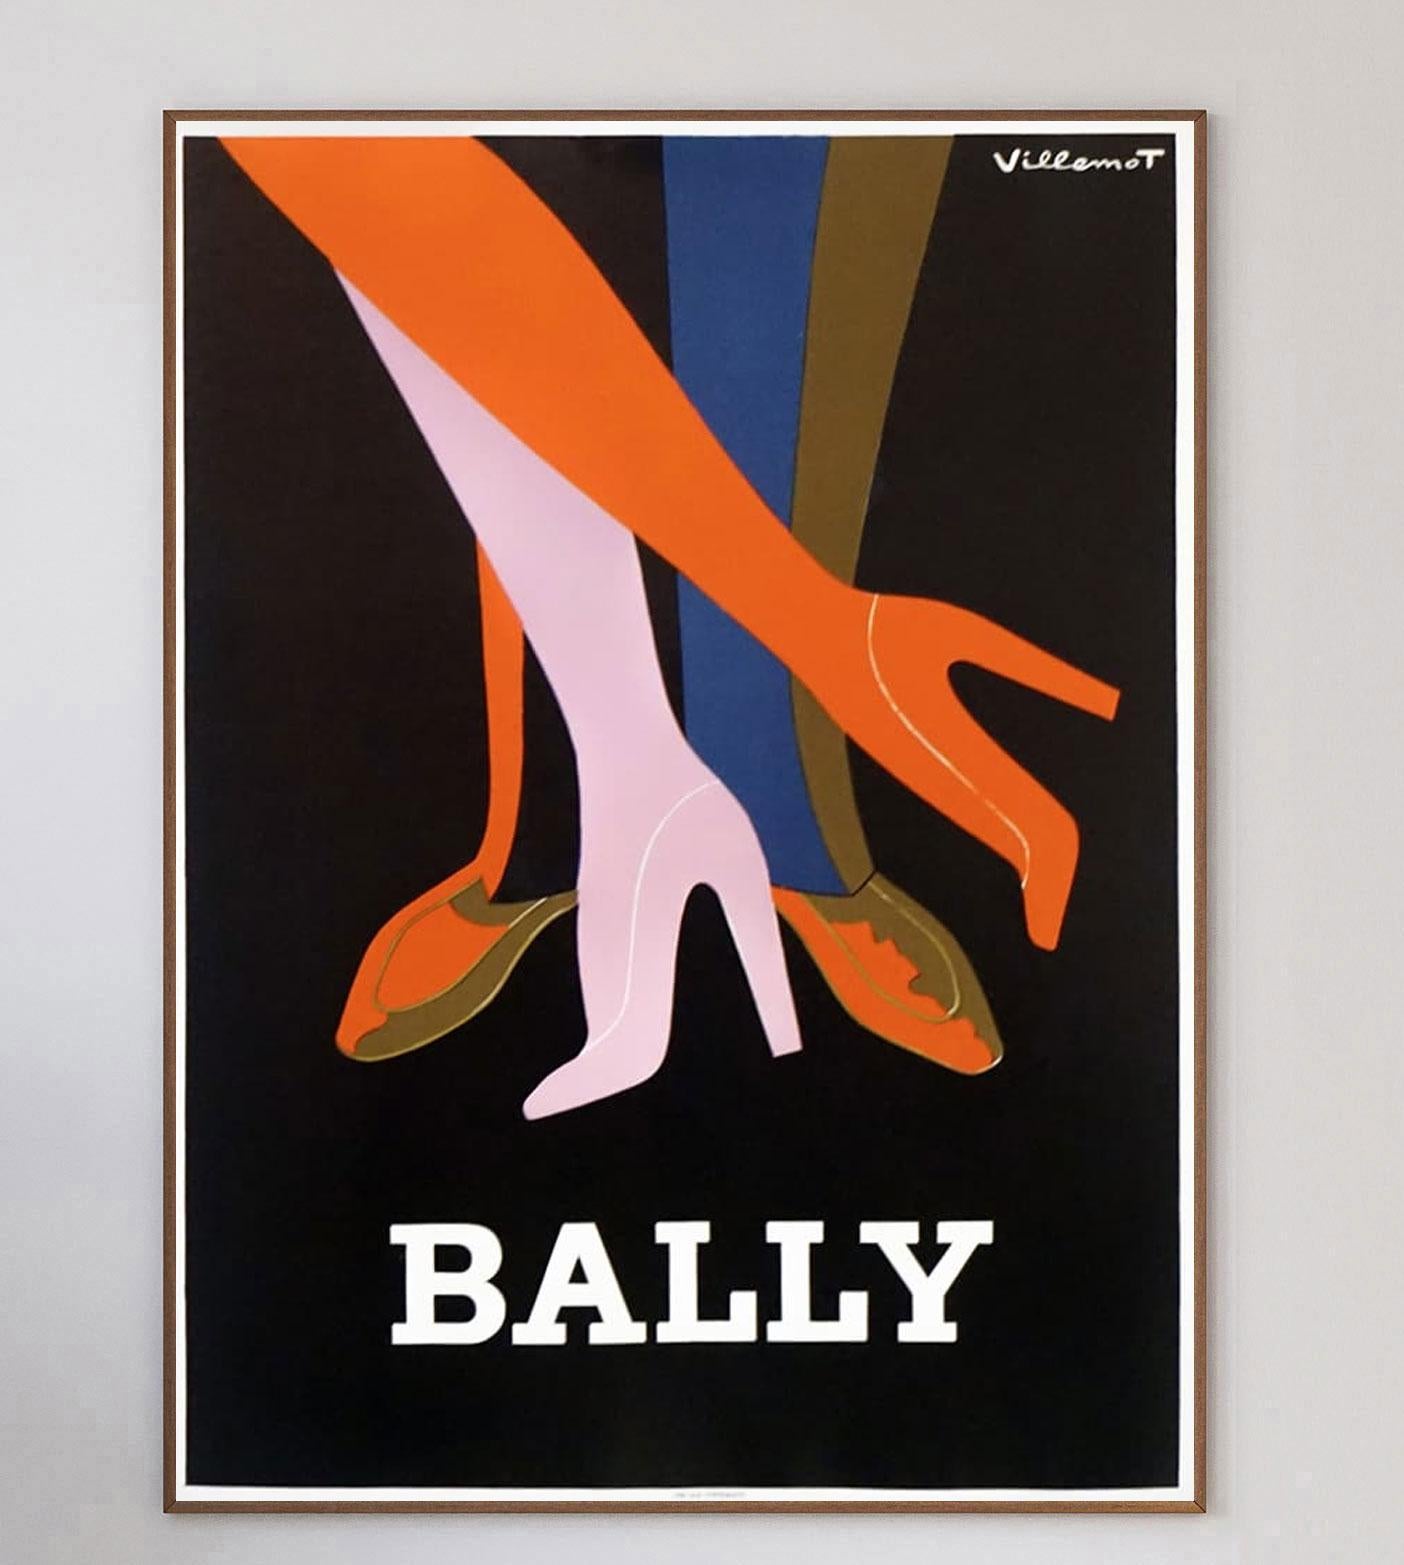 Les collaborations entre Bernard Villemot et Bally, l'un des designs les plus emblématiques et les plus recherchés du 20e siècle, illustrent le croisement entre la publicité et les beaux-arts.

Le chausseur suisse de luxe a travaillé avec le célèbre